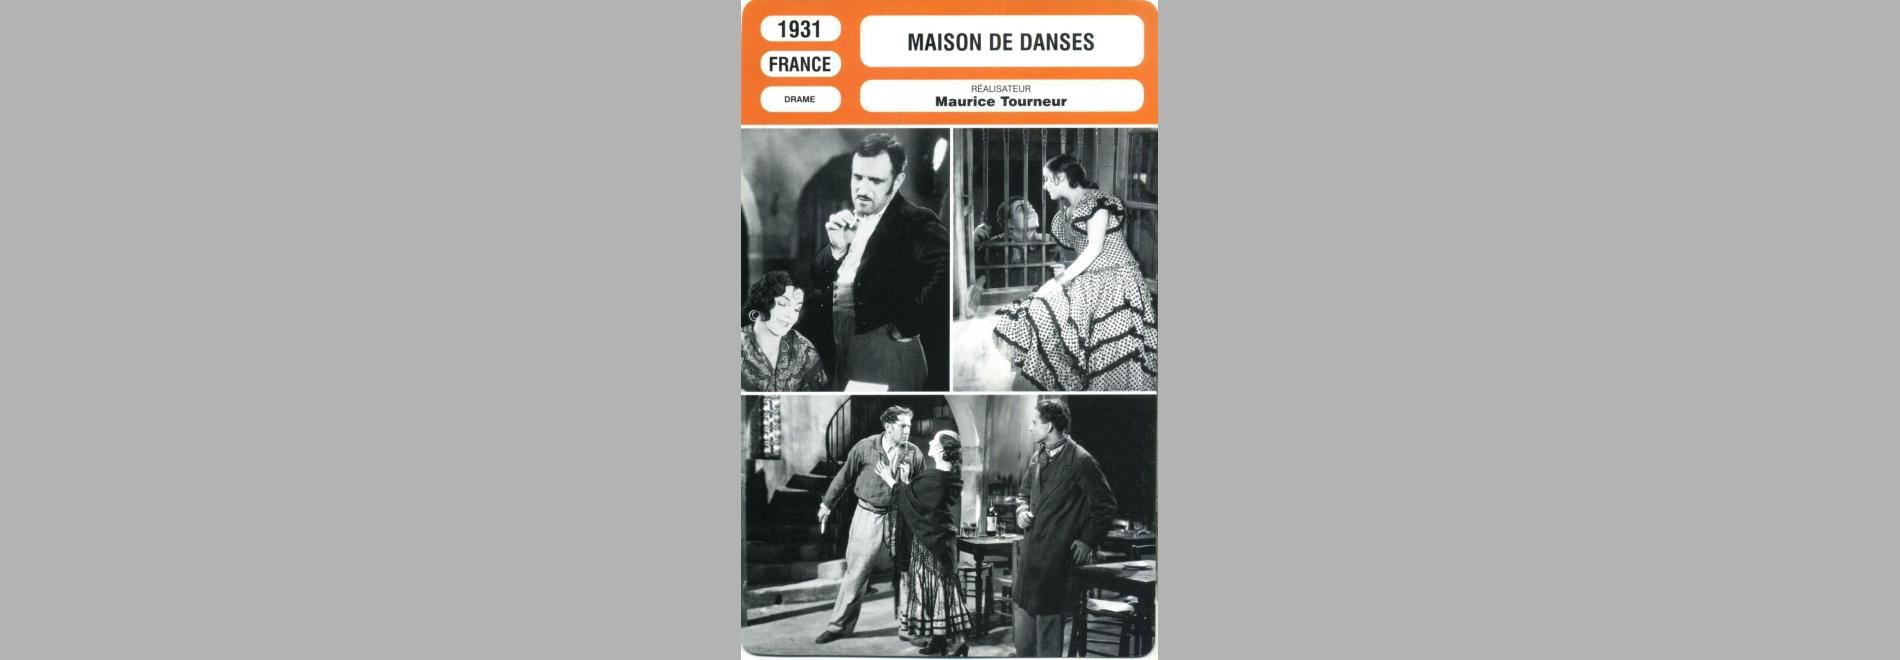 Maison de danses (Maurice Tourneur, 1931)